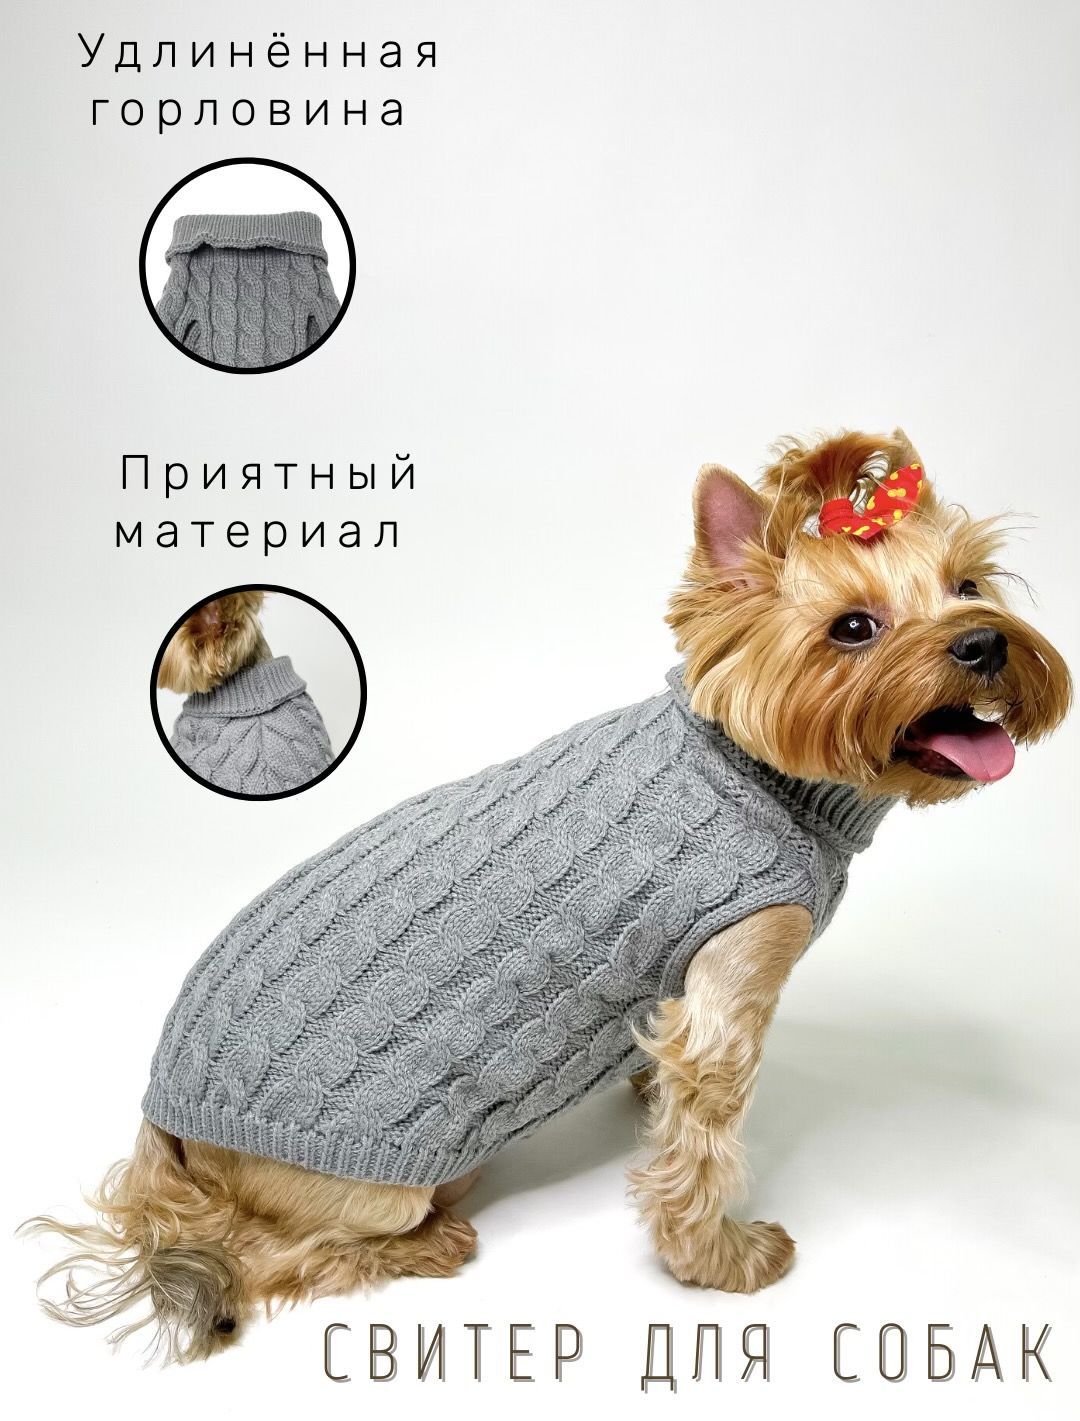 Связать свитер для собаки йорка (62 фото)